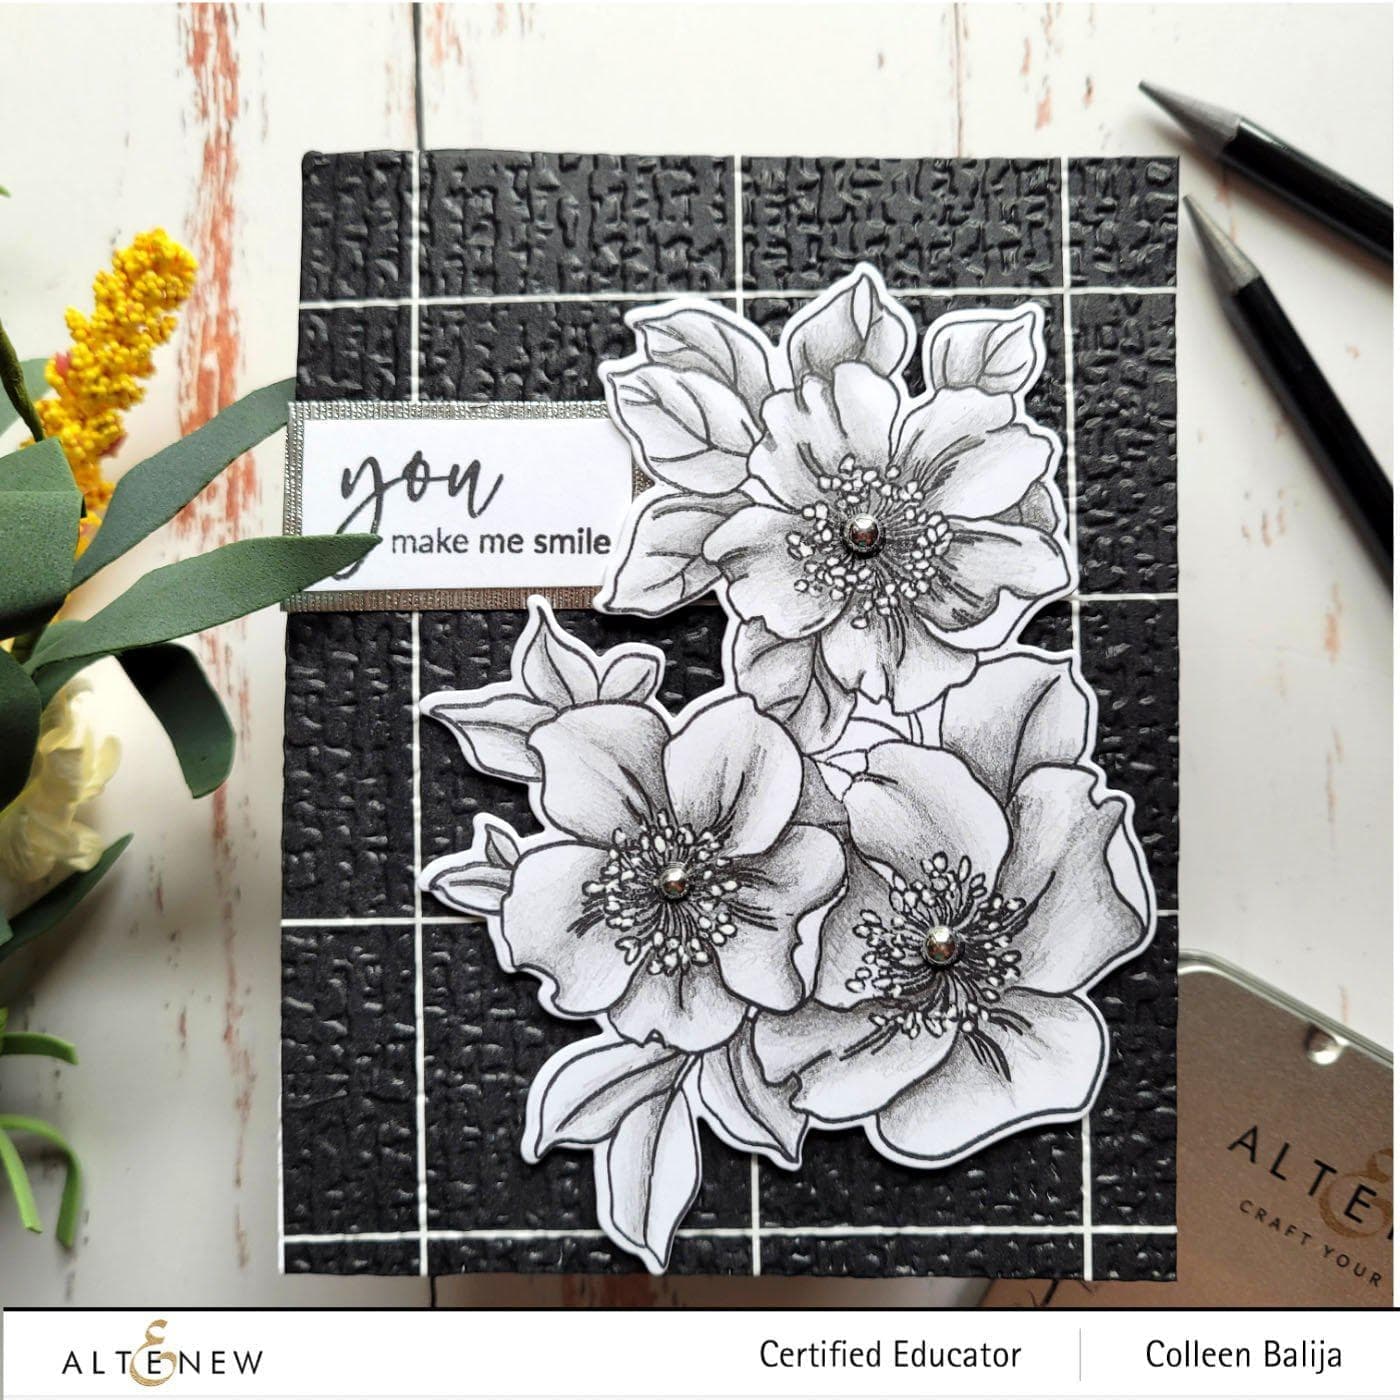 Altenew Stamp & Art Supplies Bundle Paint-A-Flower: Waterlily Dahlia & Monochrome Shading Pencils Bundle